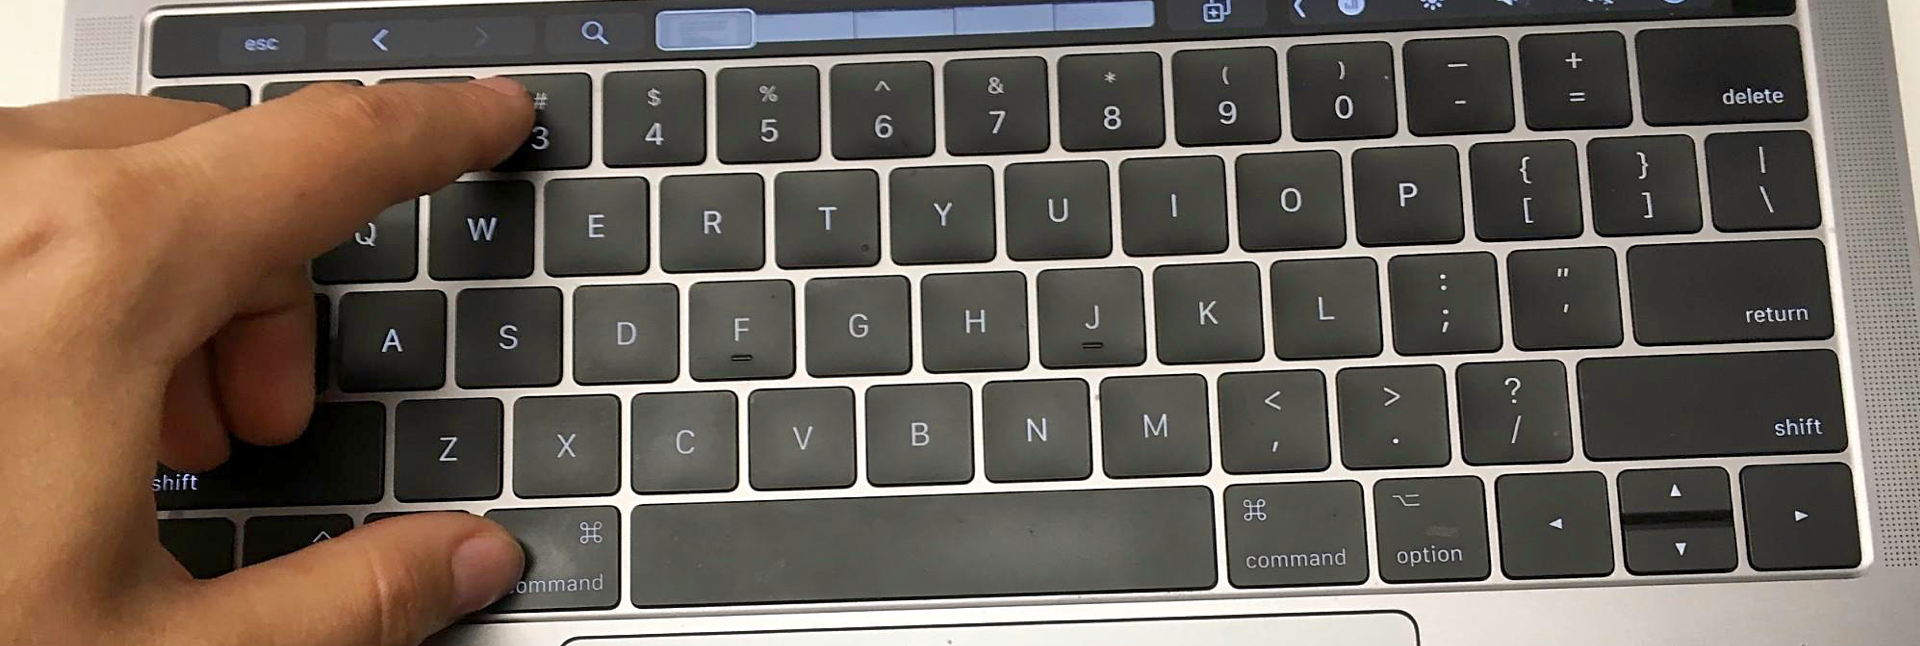 mac keyboard shortcut for screenshot